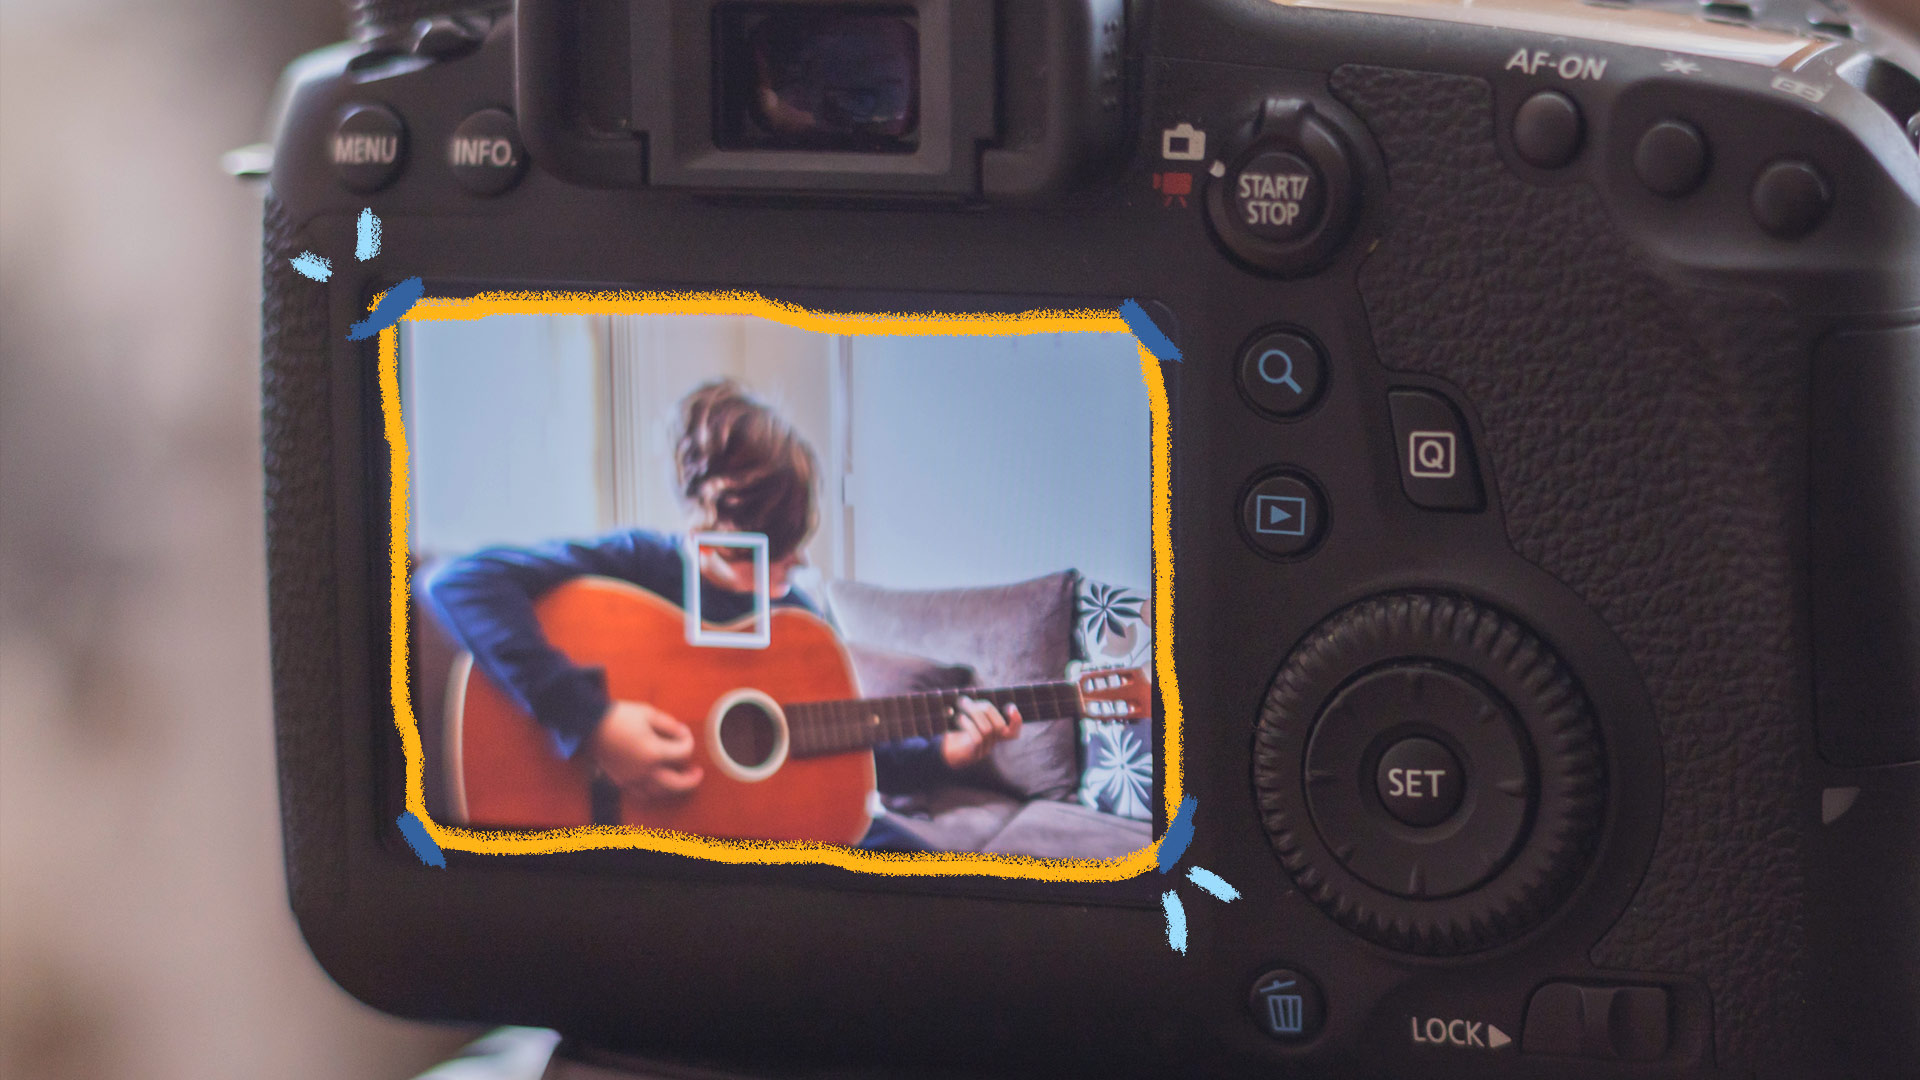 Através da lente de uma câmera digital, acompanhamos a gravação de um vídeo em que um menino toca um violão.